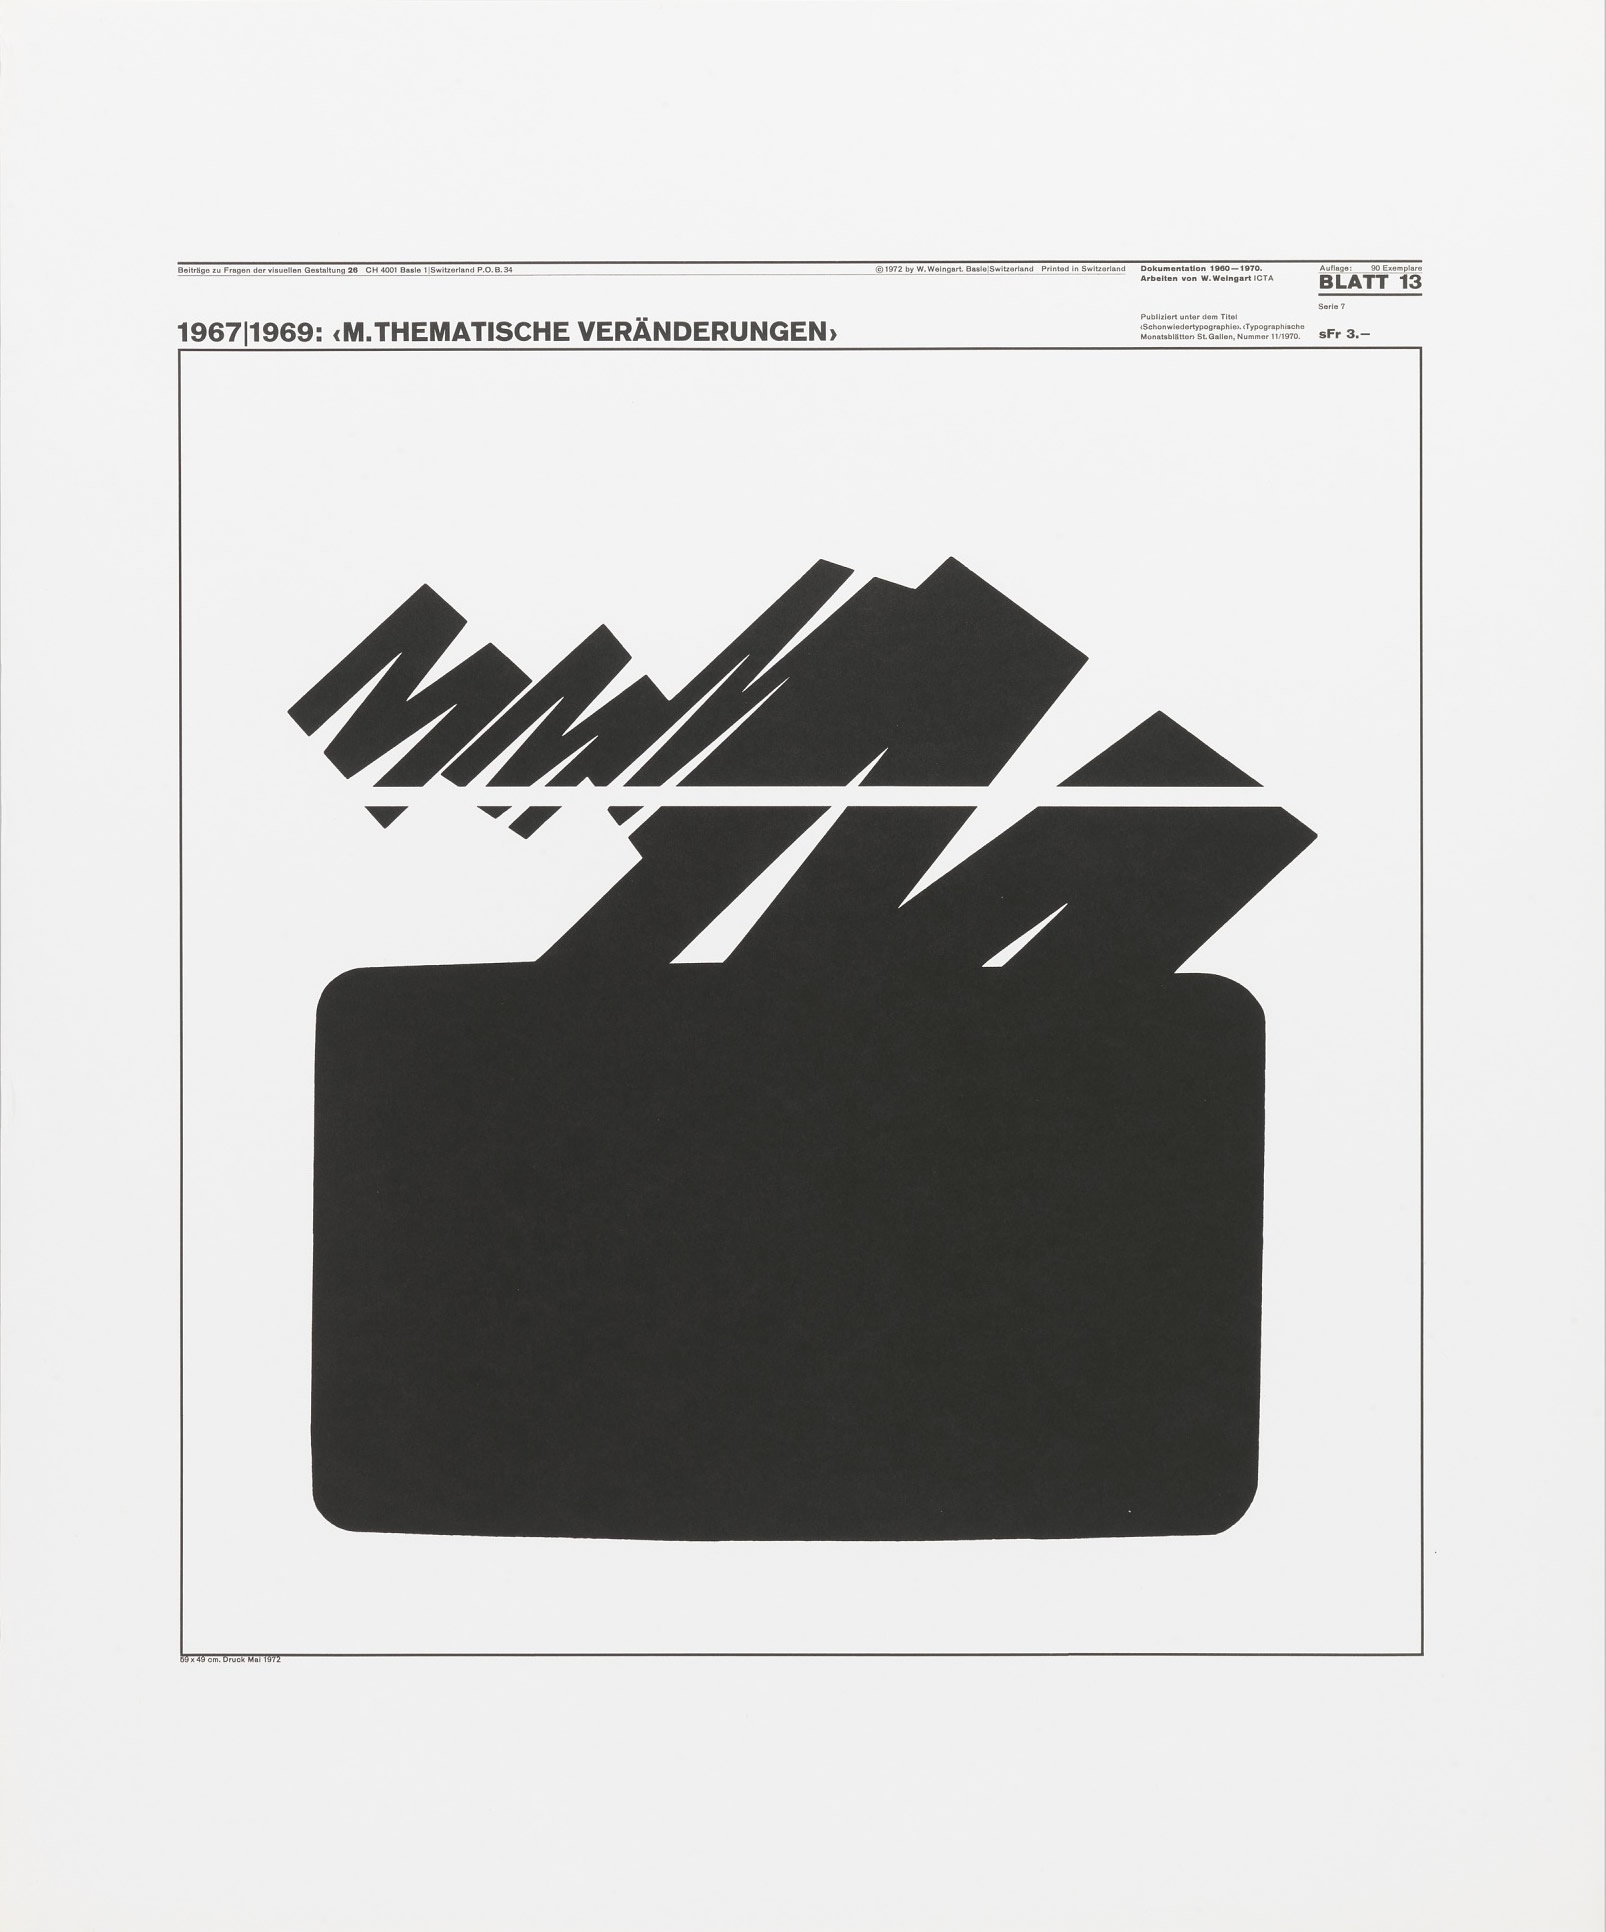 Wolfgang Weingart: Beiträge zu Fragen der visuellen Gestaltung 26, Blatt 13 from the portfolio Dokumentation 1960—1970, Arbeiten von W. Weingart, Designed 1967-69. Lithograph. (58.9 x 49 cm) 